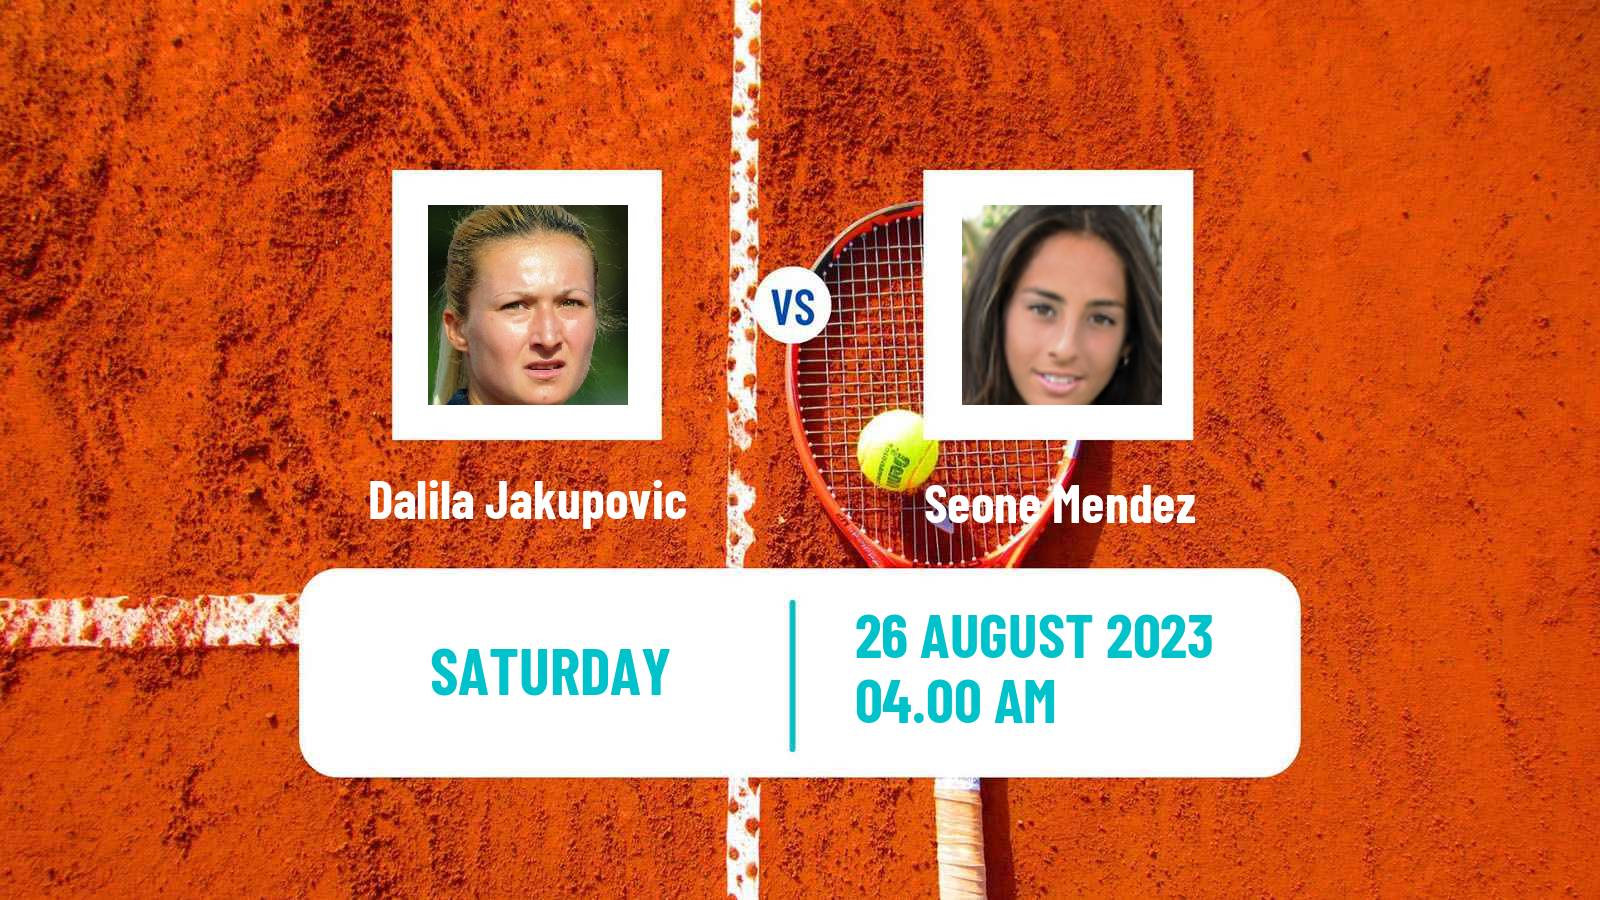 Tennis ITF W25 Bydgoszcz Women Dalila Jakupovic - Seone Mendez